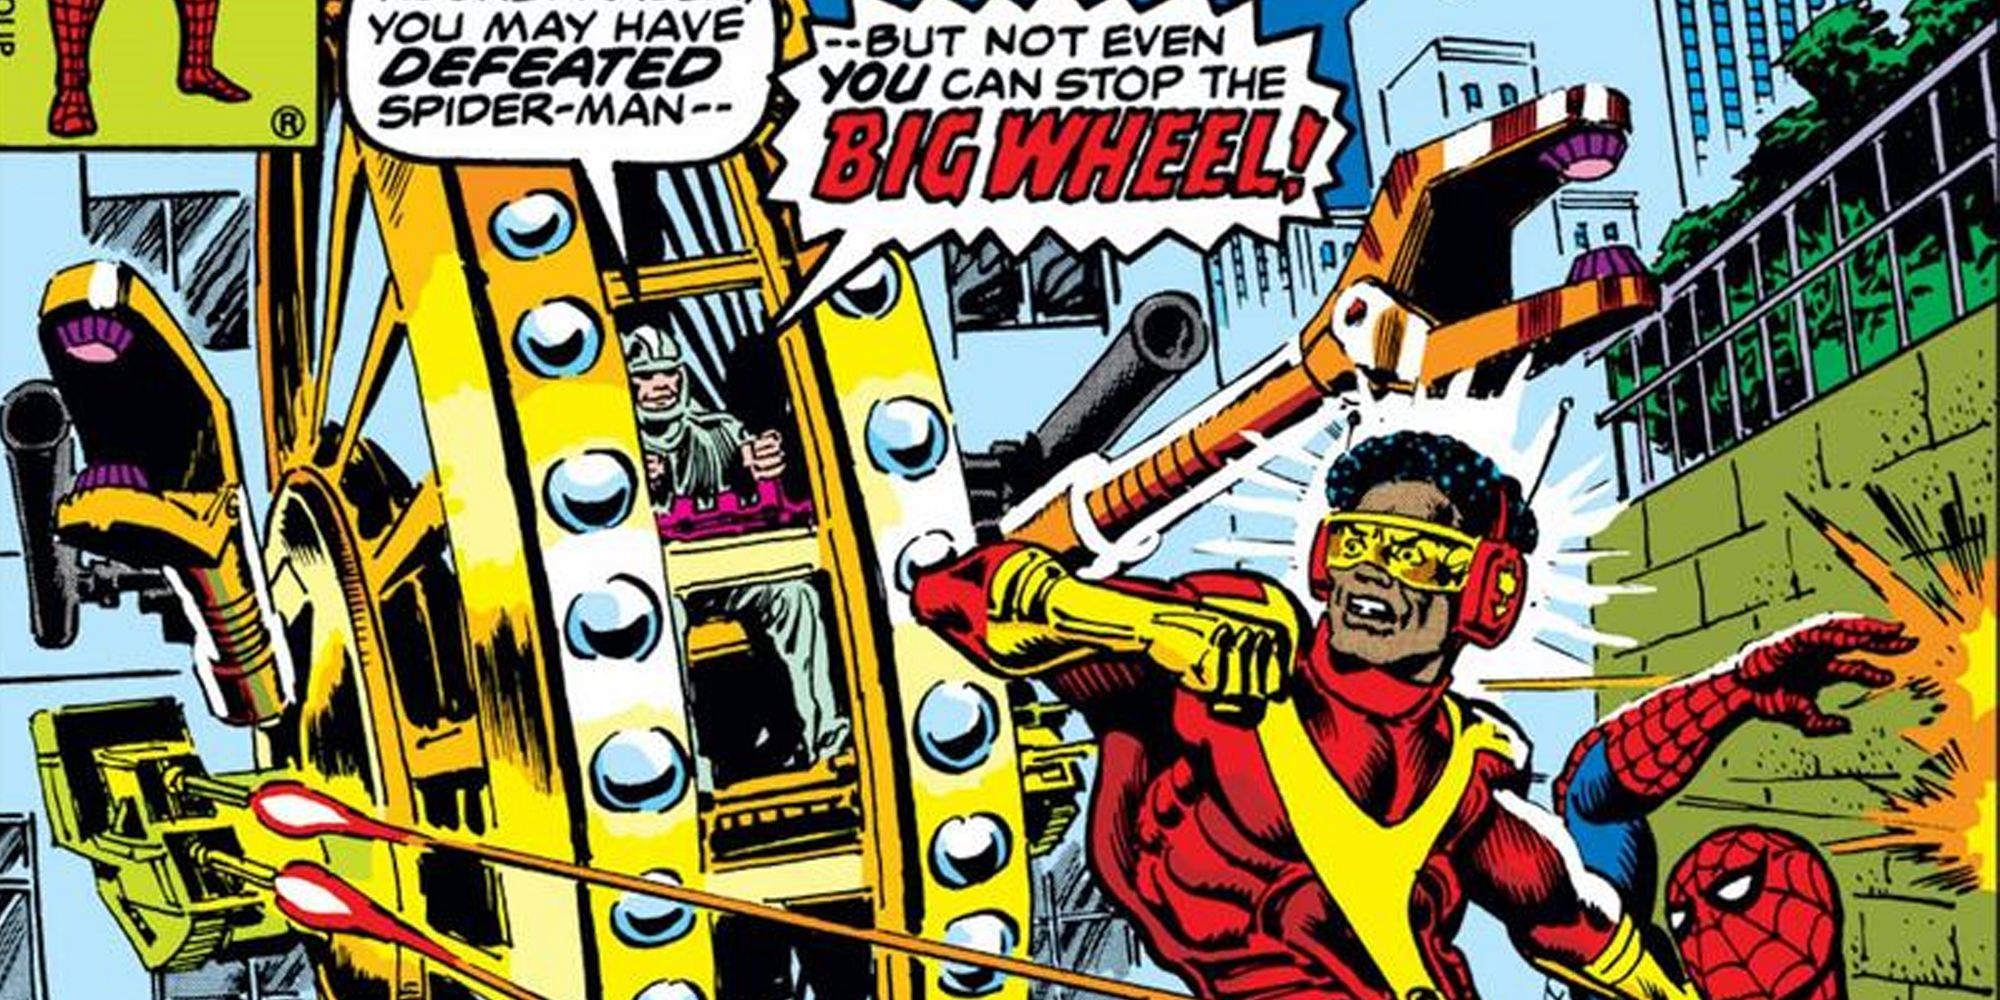 Big Wheel, a.k.a. Jackson Weele, from Marvel Comics